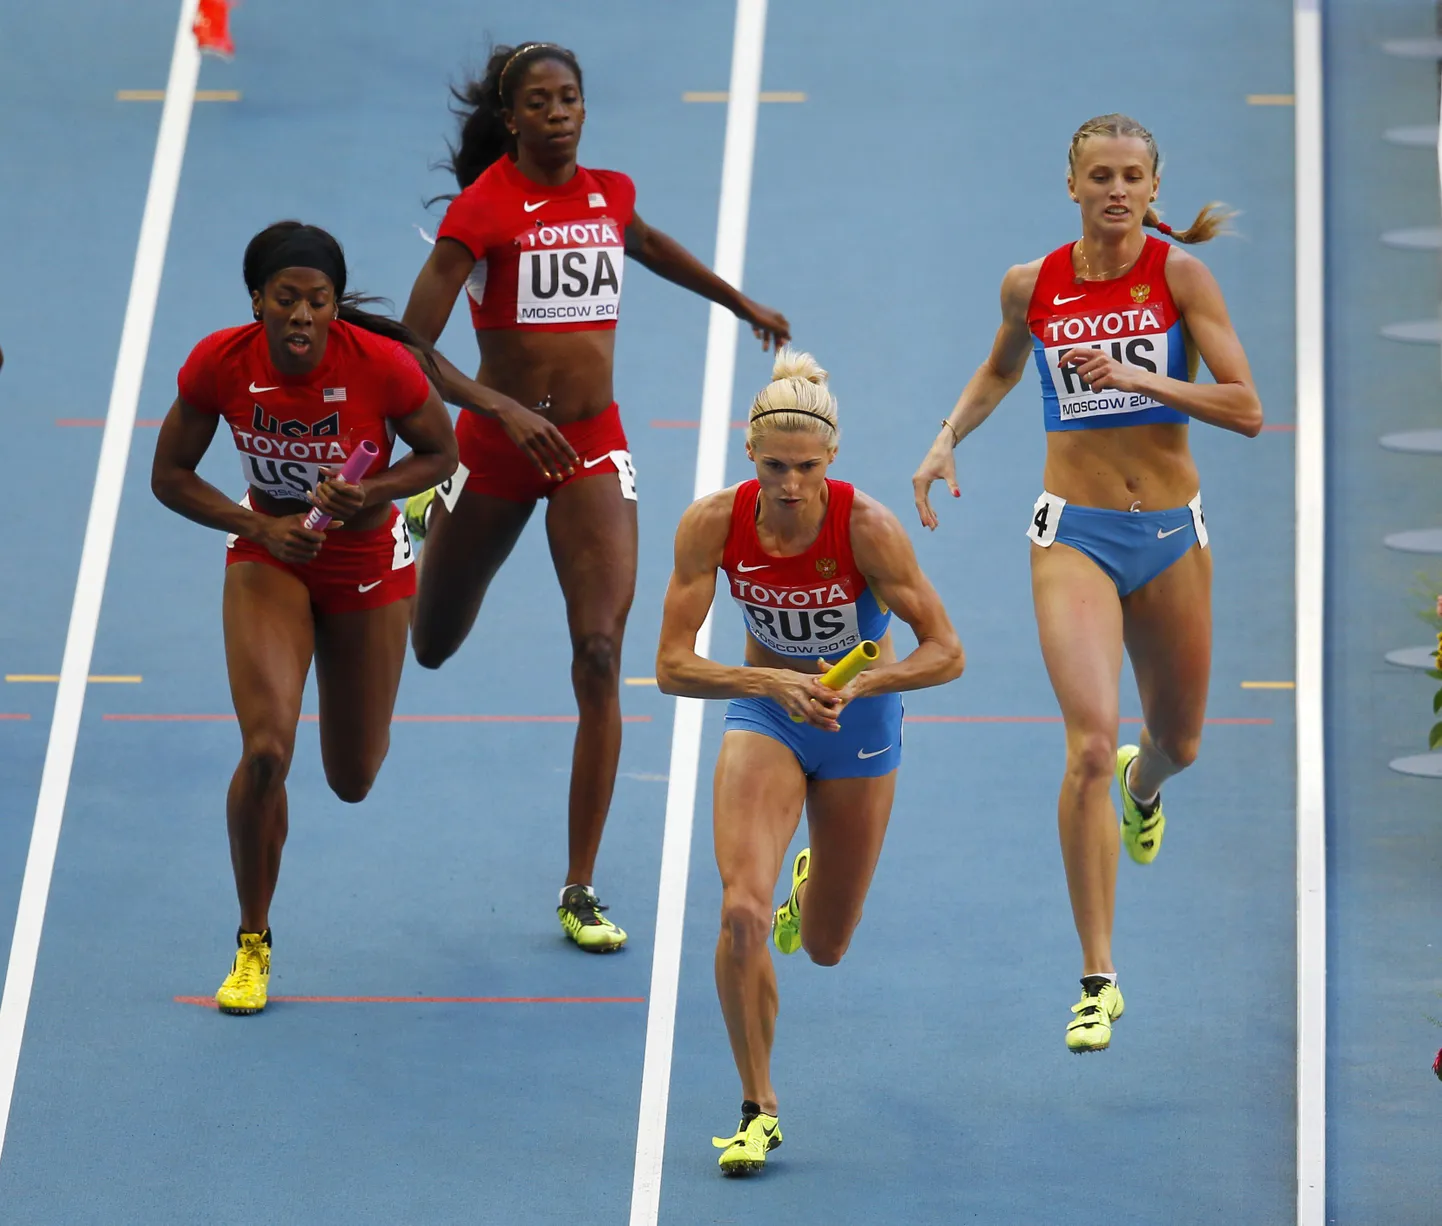 Сборная России на чемпионате мира по легкой атлетике в Москве выиграла финал в женской эстафете 4х400 м.